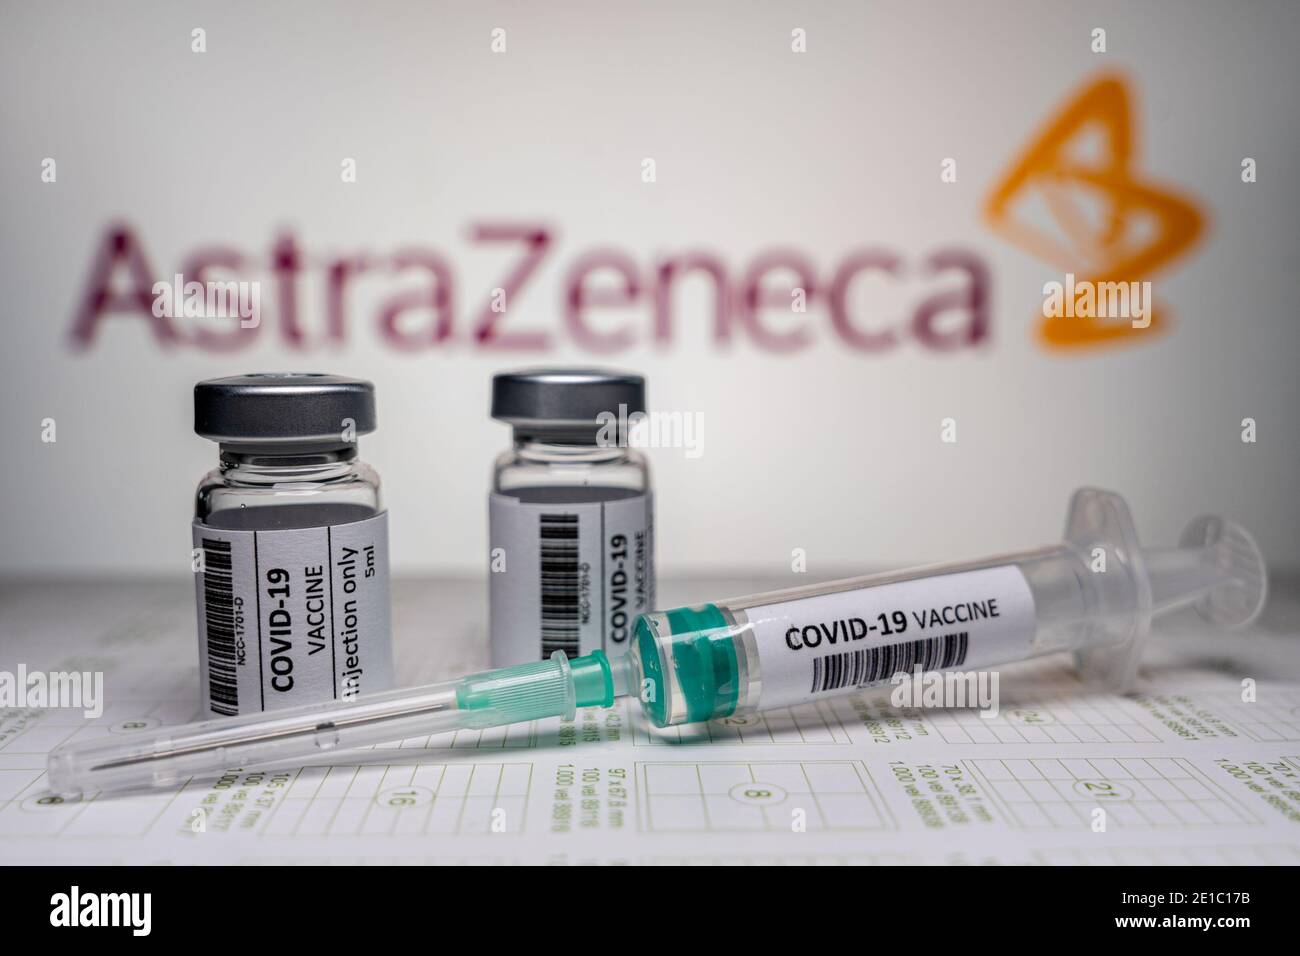 NIMÈGUE, PAYS-BAS - JANVIER 5 : illustration du coronavirus / vaccin Covid-19. Flacons et seringue devant l'illustration du logo AstraZeneca /. Vaccin Banque D'Images